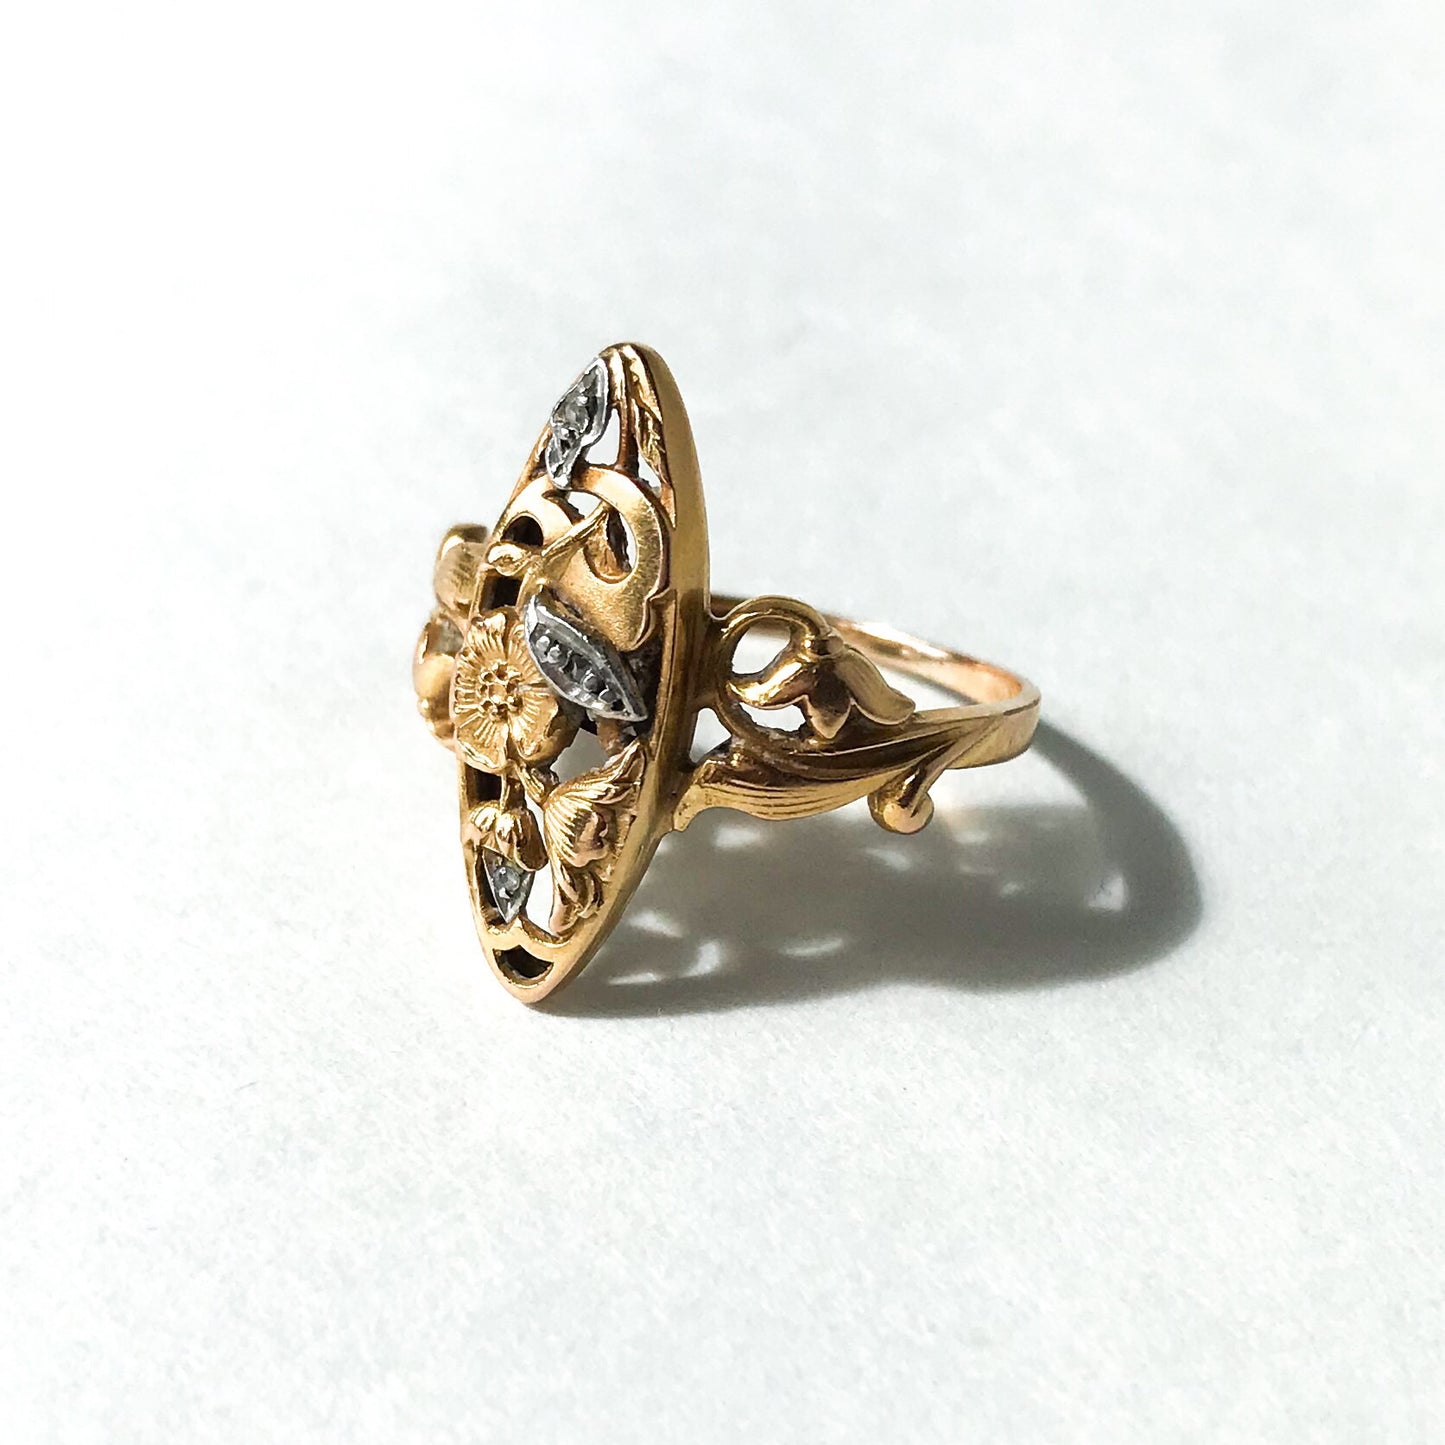 SOLD--Art Nouveau Rose Cut Diamond Navette Ring Silver/18k c. 1900